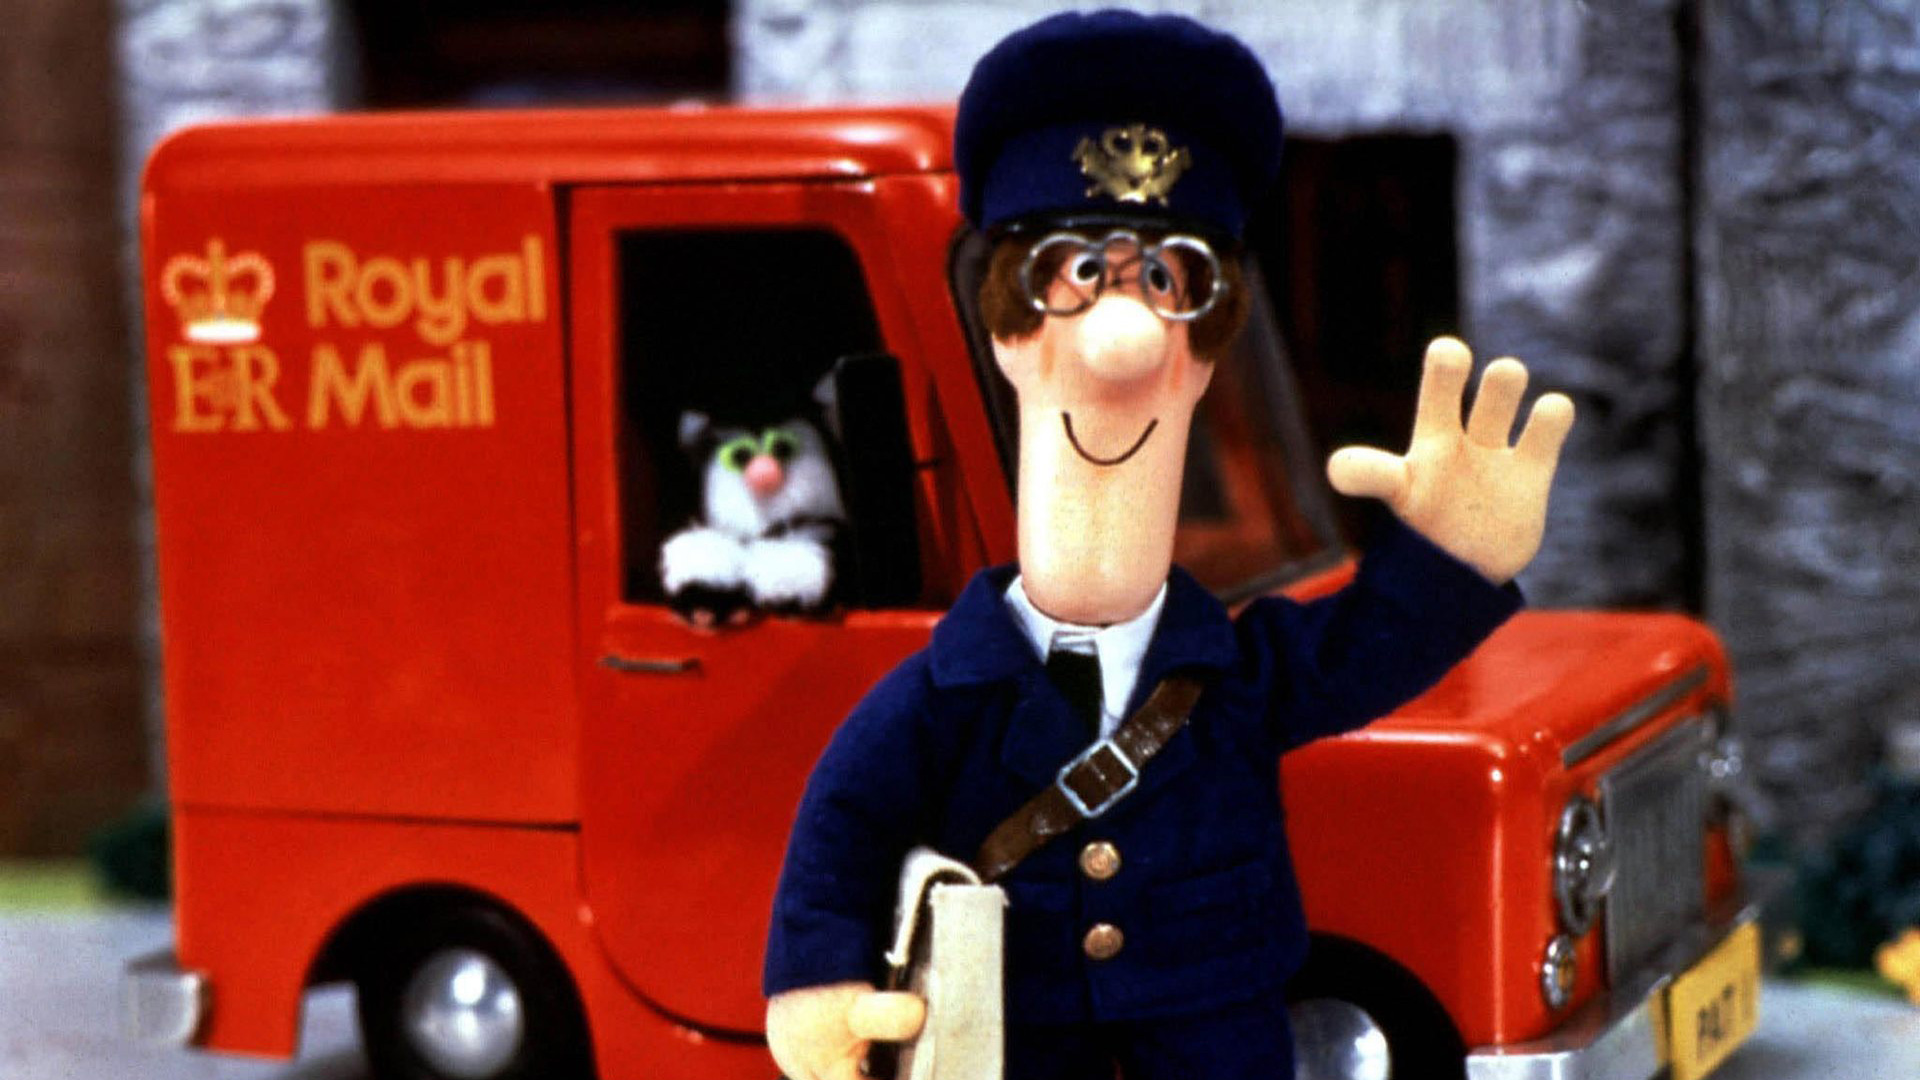 postman-pat-tv-series-1981-2006